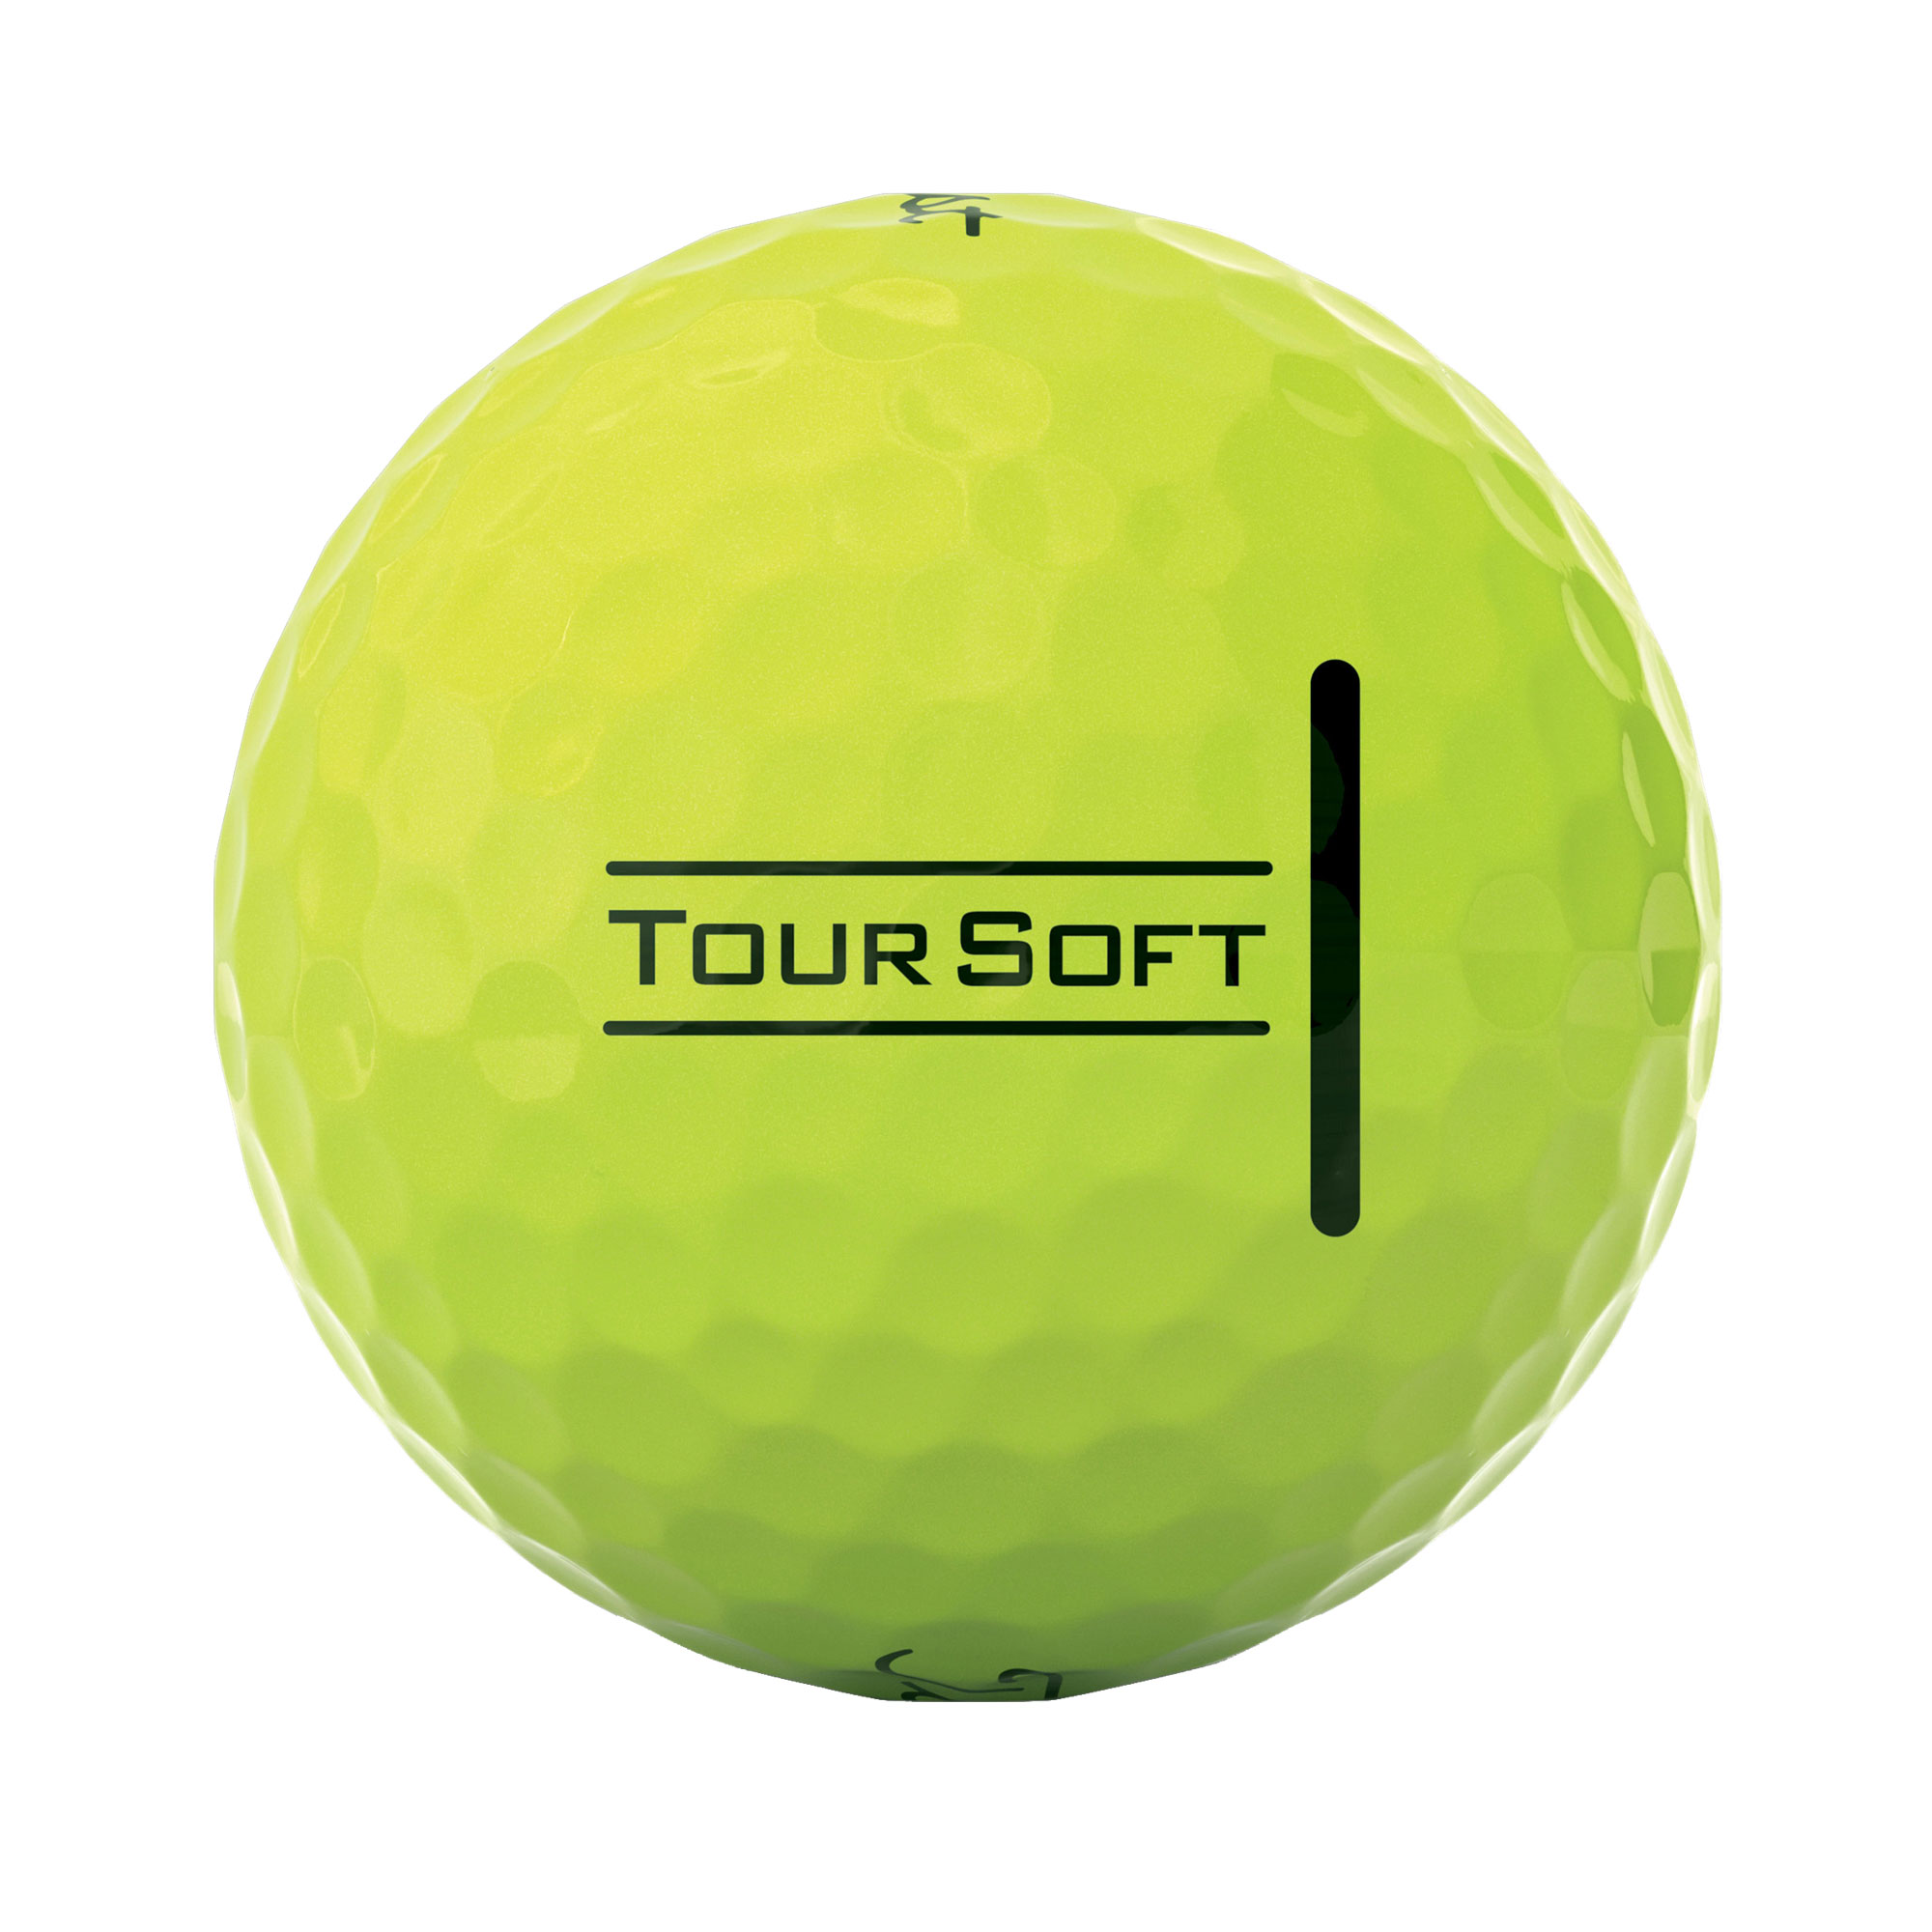 Titleist Tour Soft Golfbälle bedruckt, gelb (VPE à 12 Bälle)